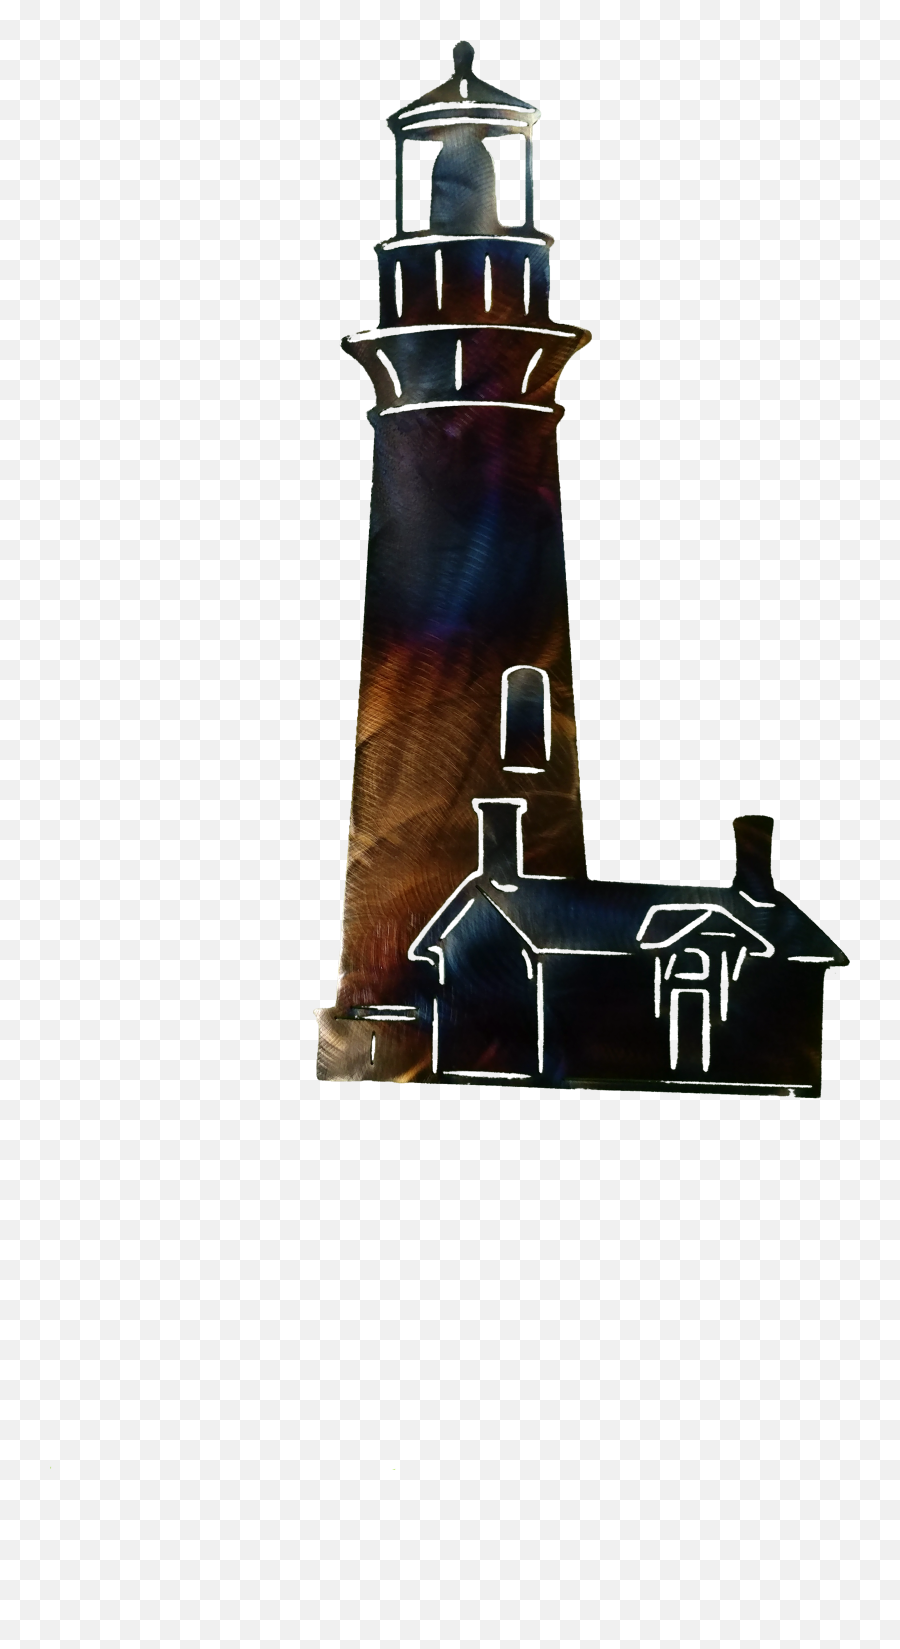 Lighthouse Transparent Cartoon - Jingfm Silhouette Transparent Lighthouse Clipart Png,Lighthouse Clipart Png